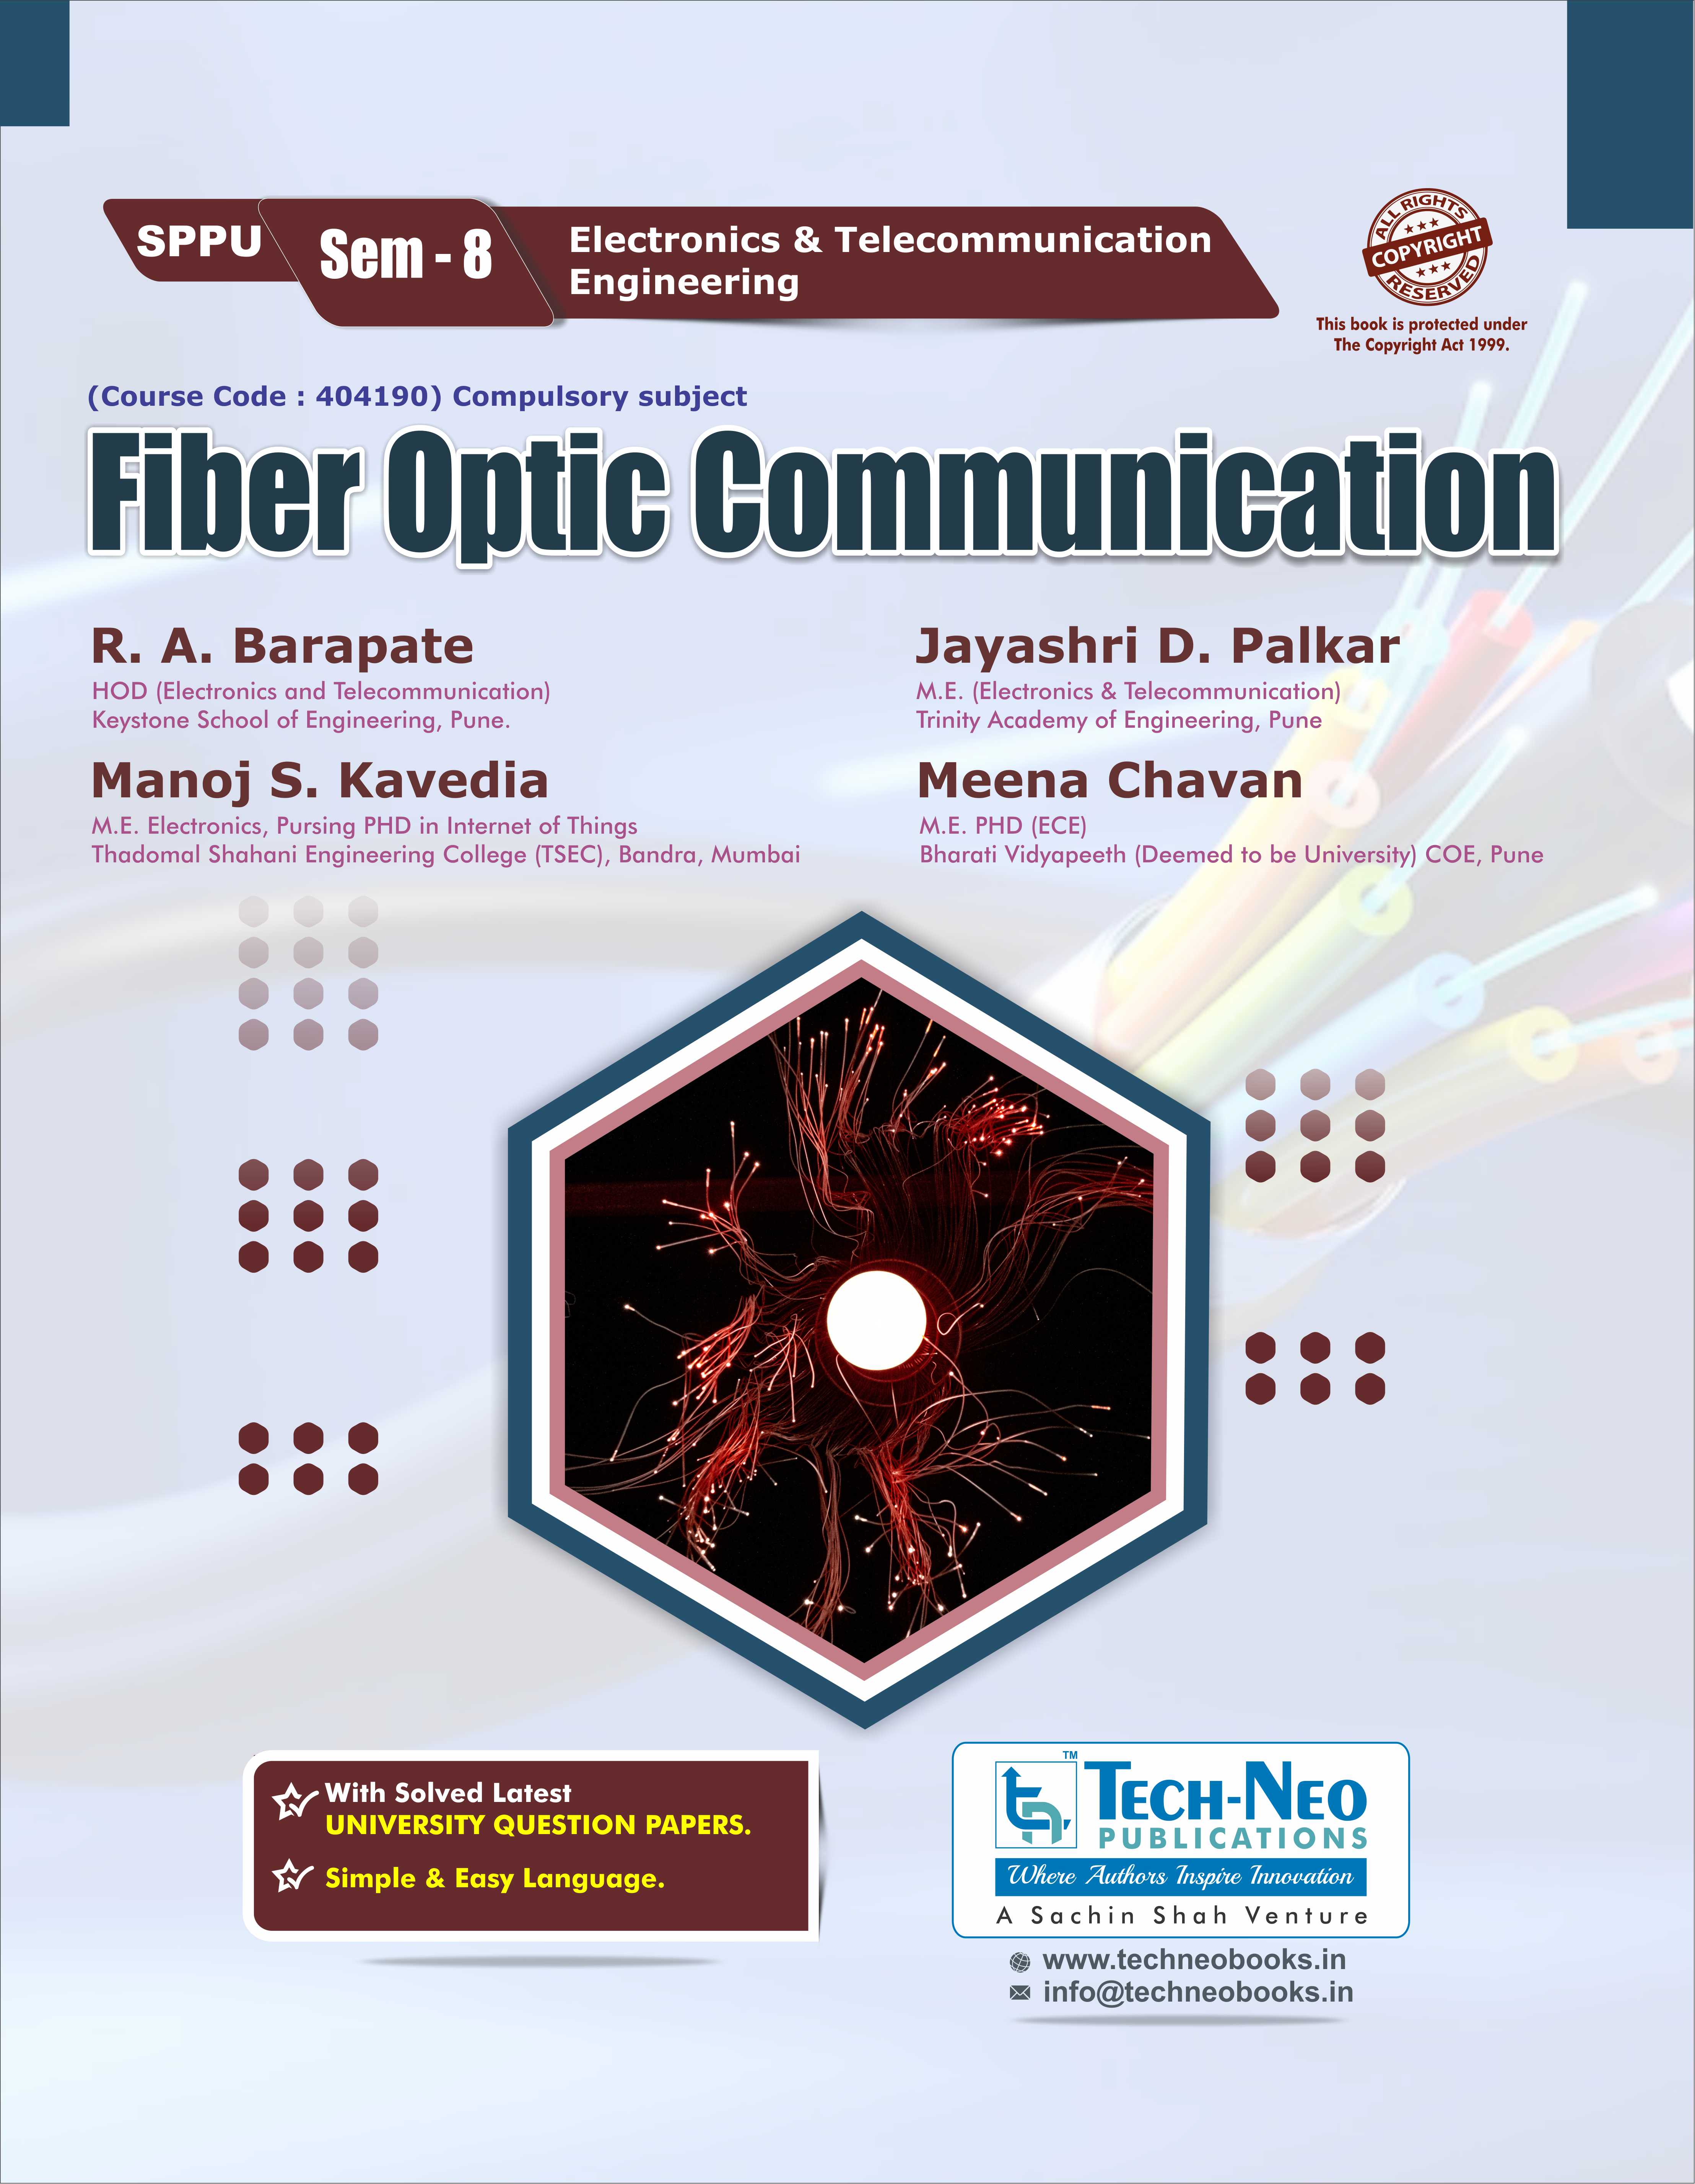 Fiber optic communication